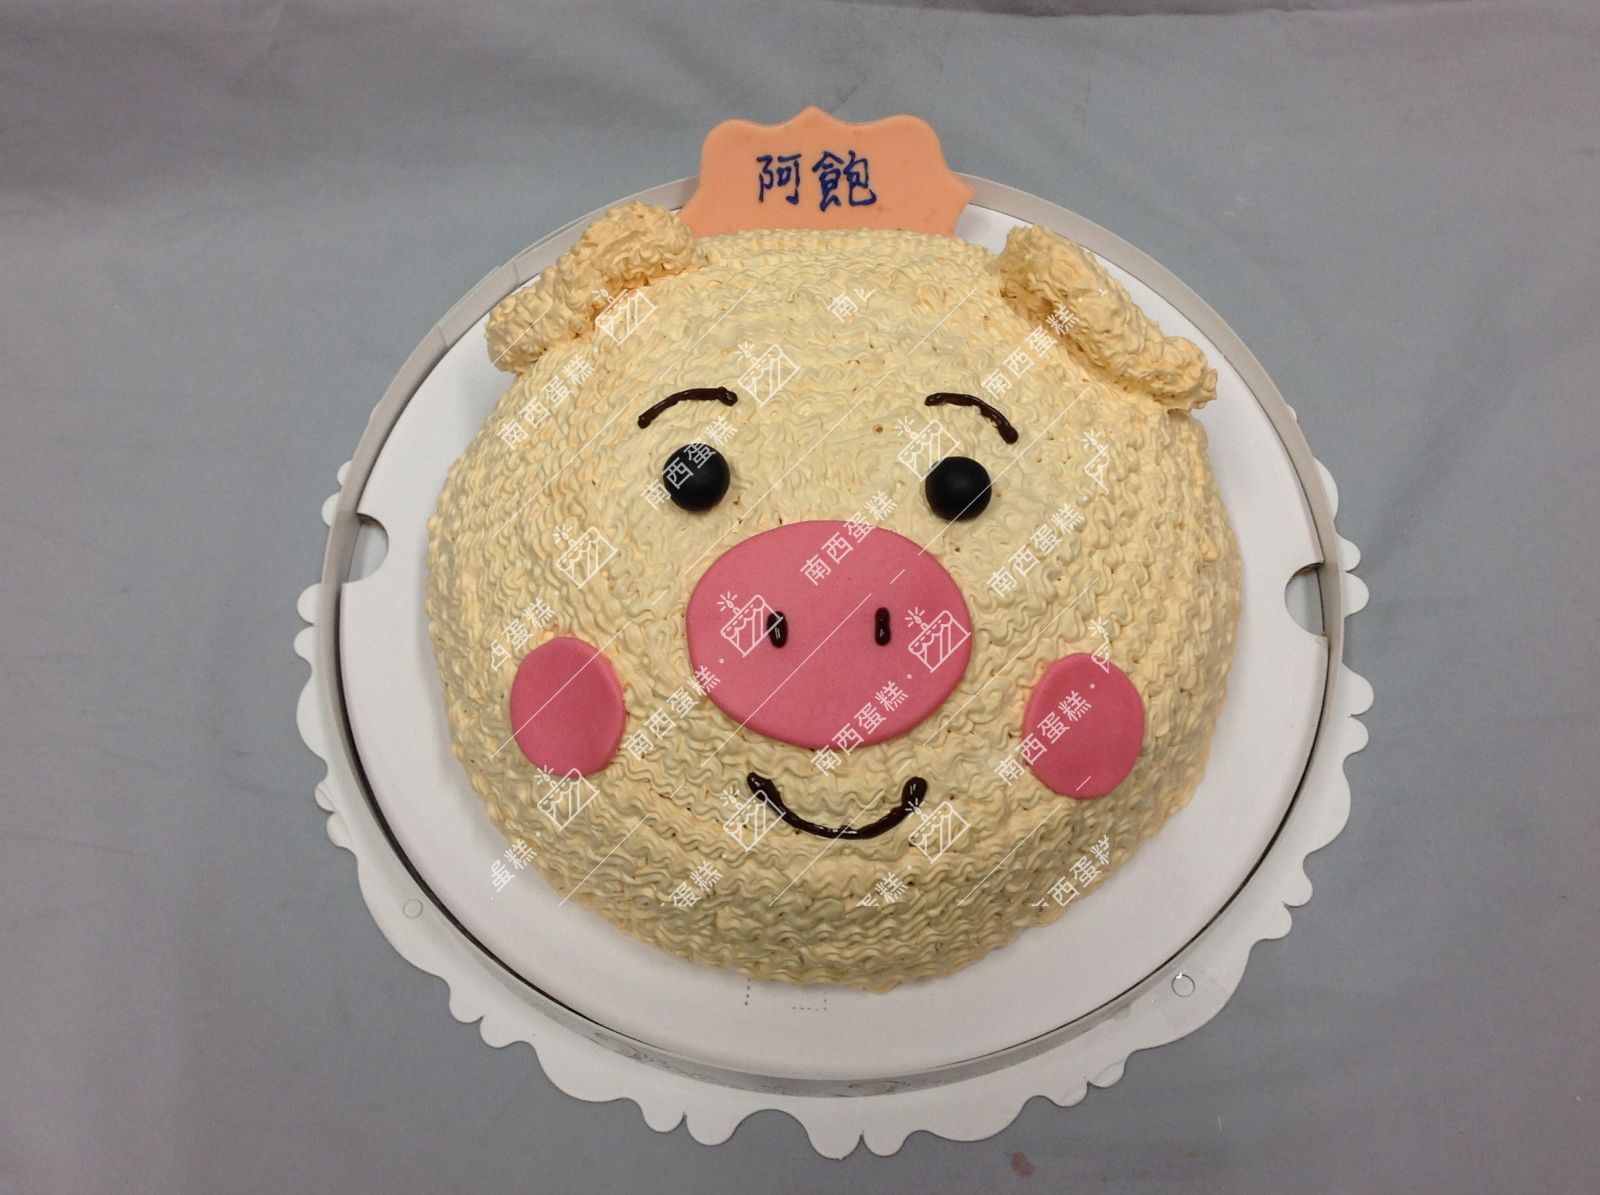 台北豬造型蛋糕-南西蛋糕